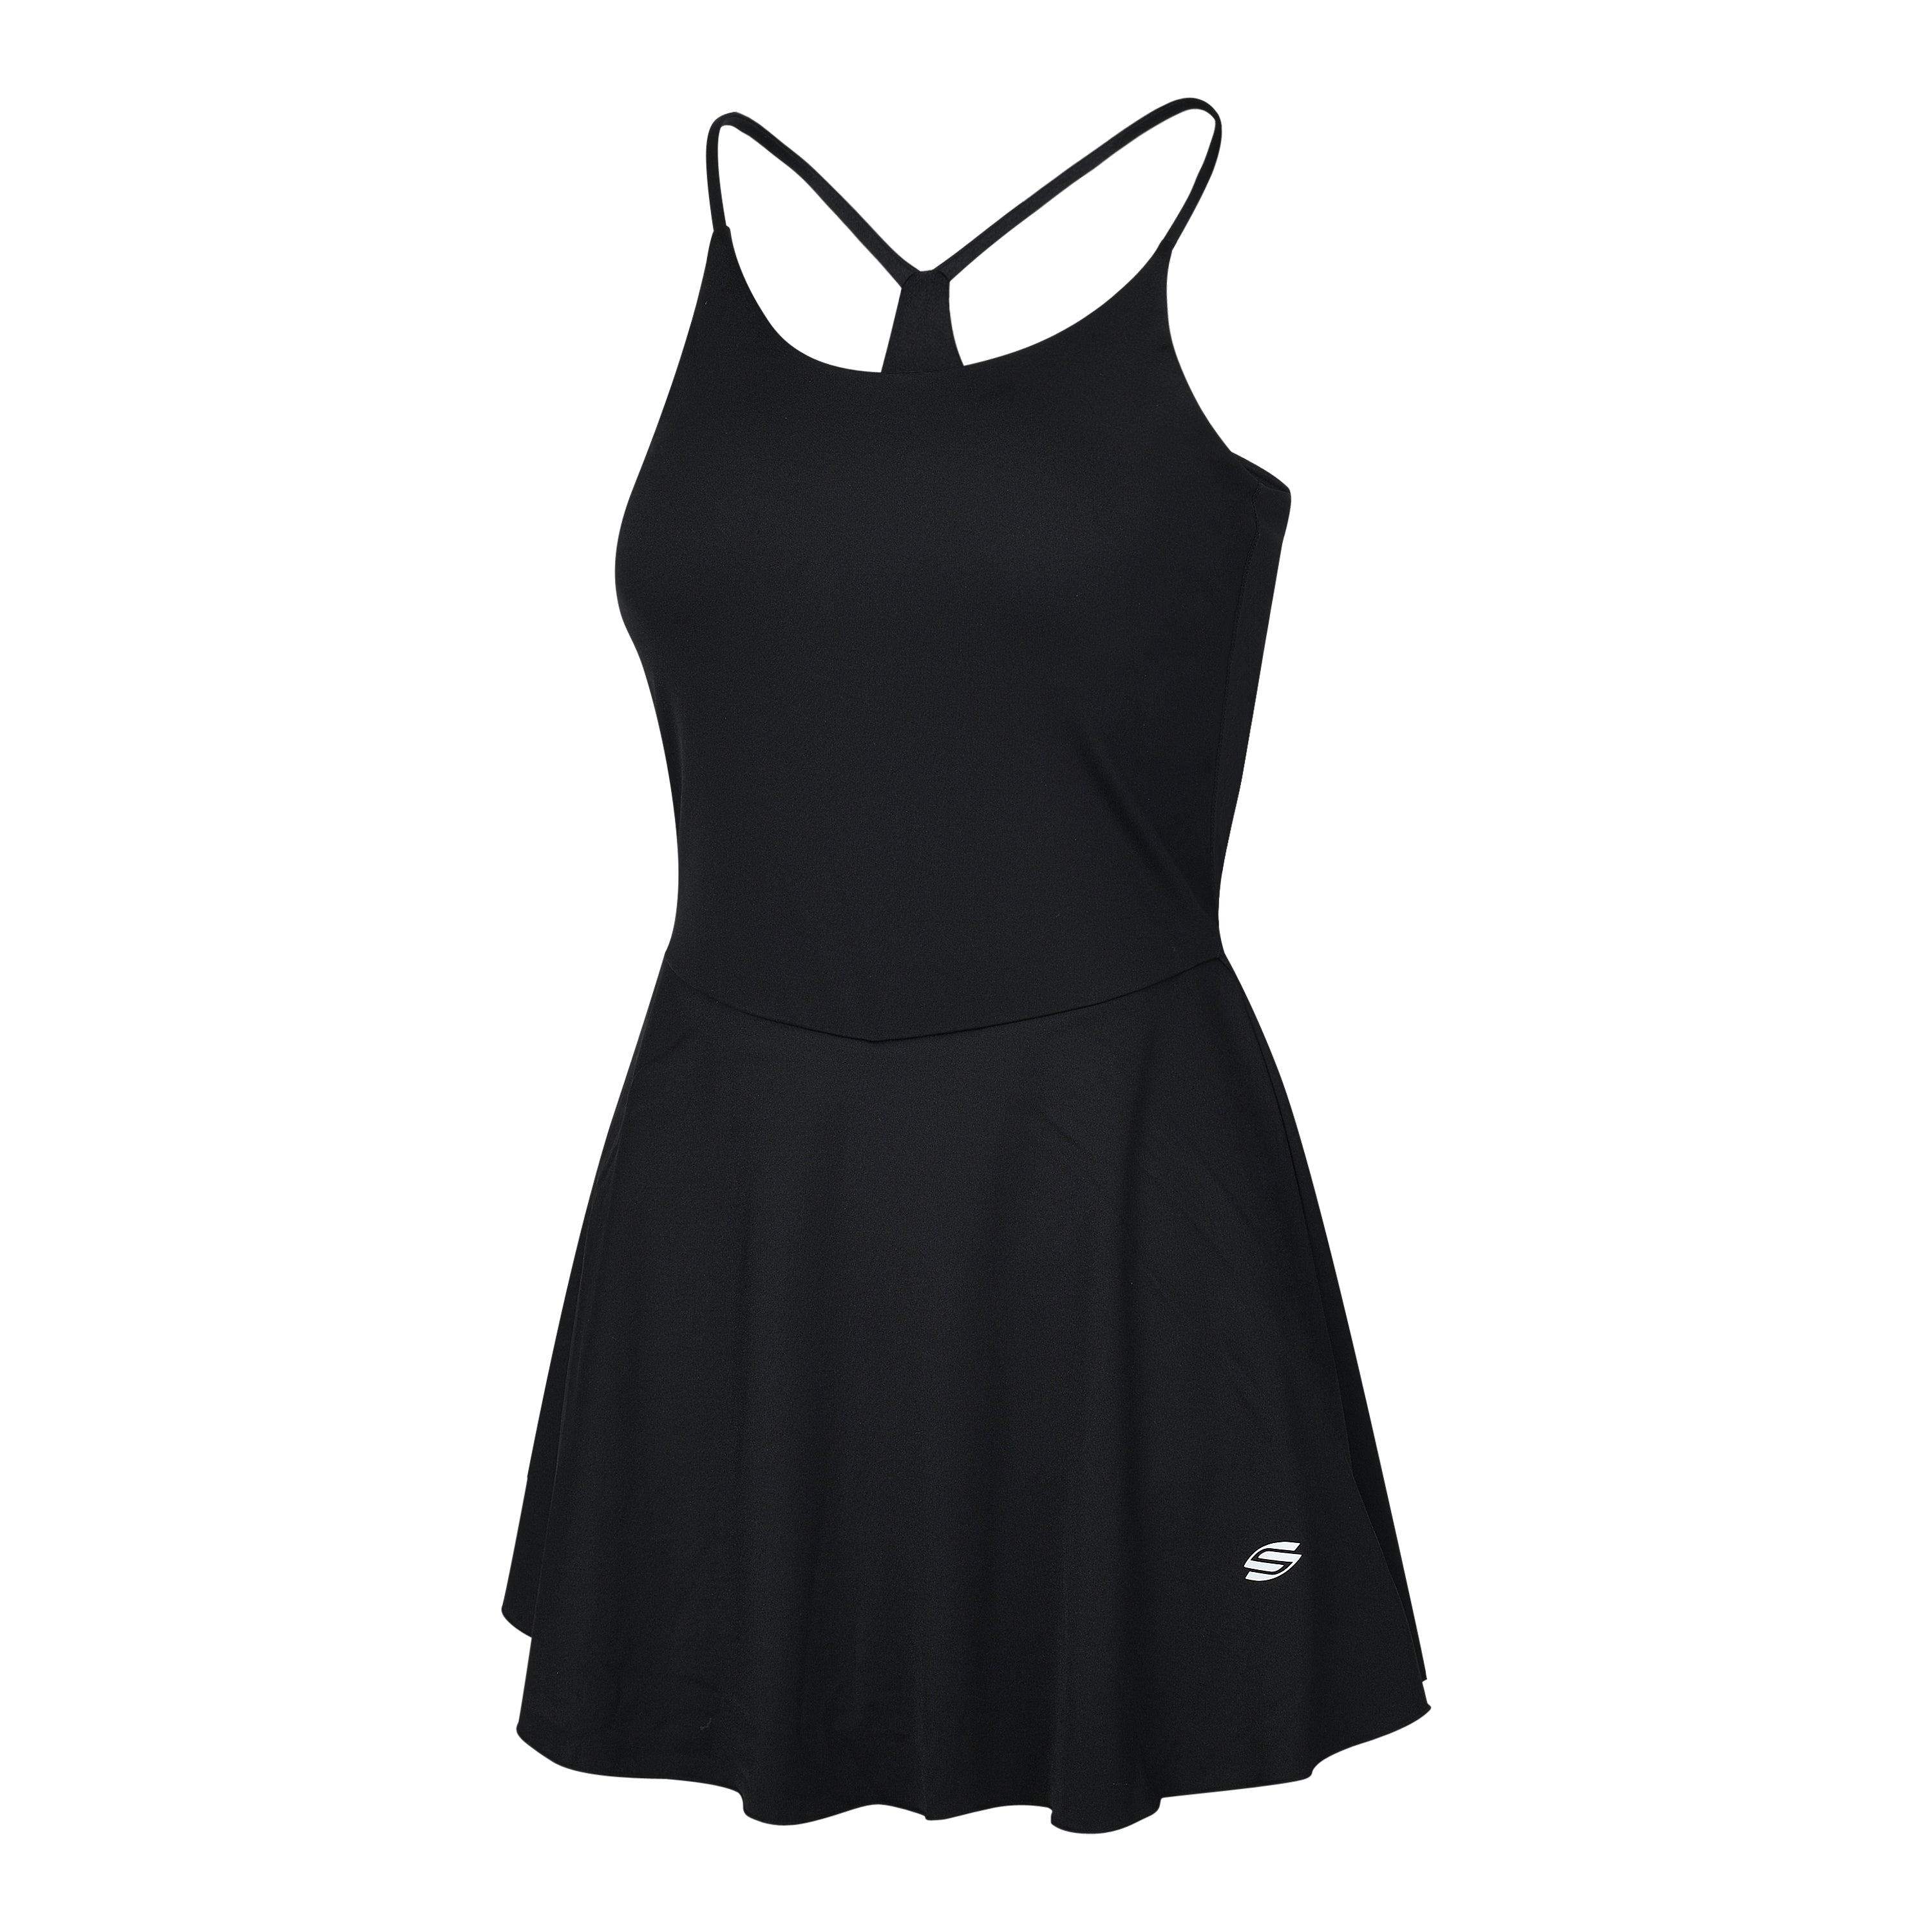 Black AvaLee by Selkirk Women's Single-Strap Court Dress